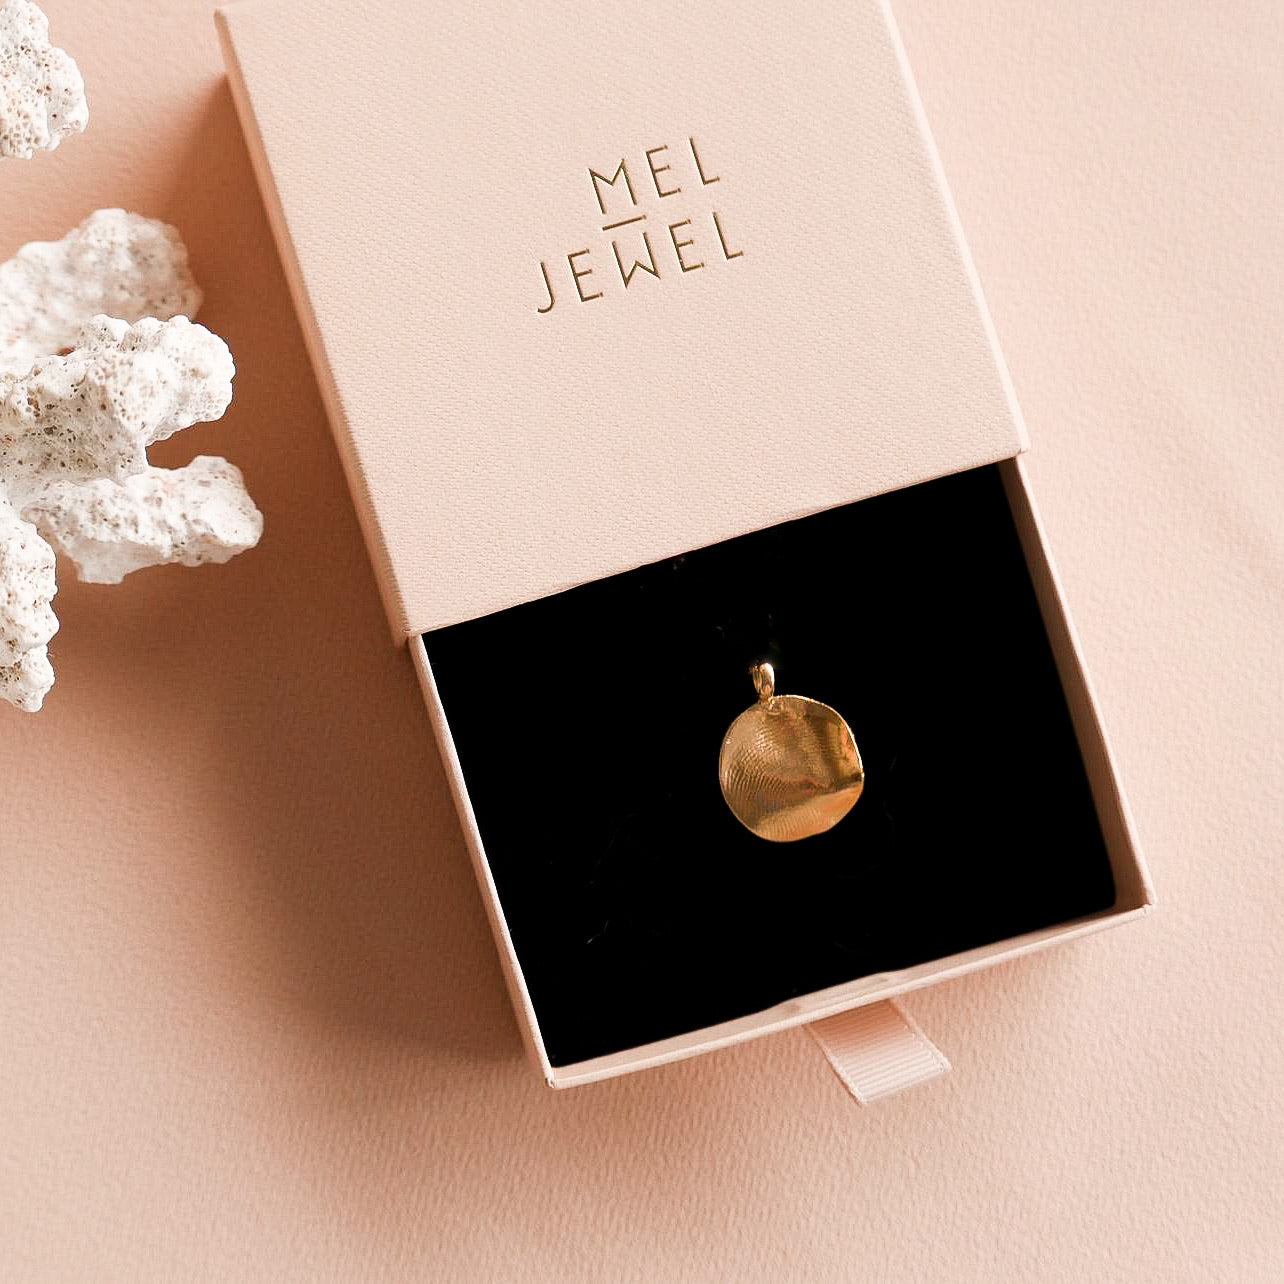 mel jewel bespoke gold necklace fingerprint pendant medalha impressão digital marca portuguesa